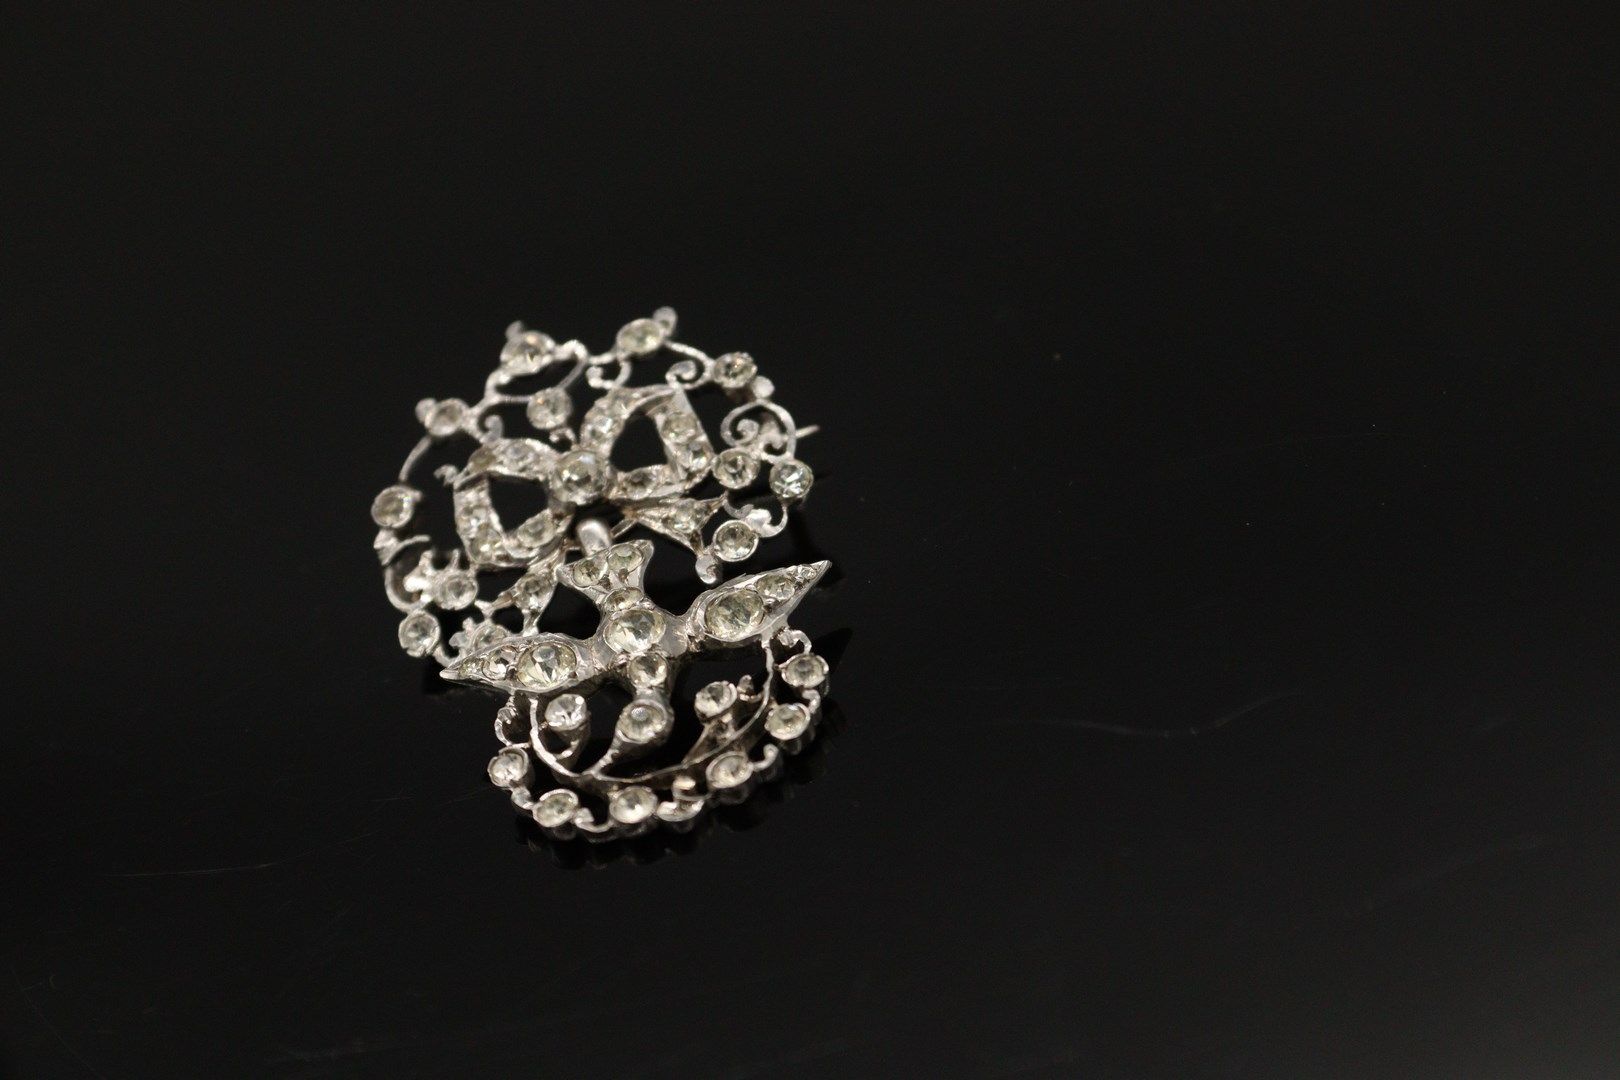 Null 银质（800）"诺曼底圣灵 "胸针，装饰有白色水钻。 胸针是一只被打结的丝带牵着的鸽子，嘴里叼着一根树枝。

标记为：800。

长度：4厘米。

毛&hellip;